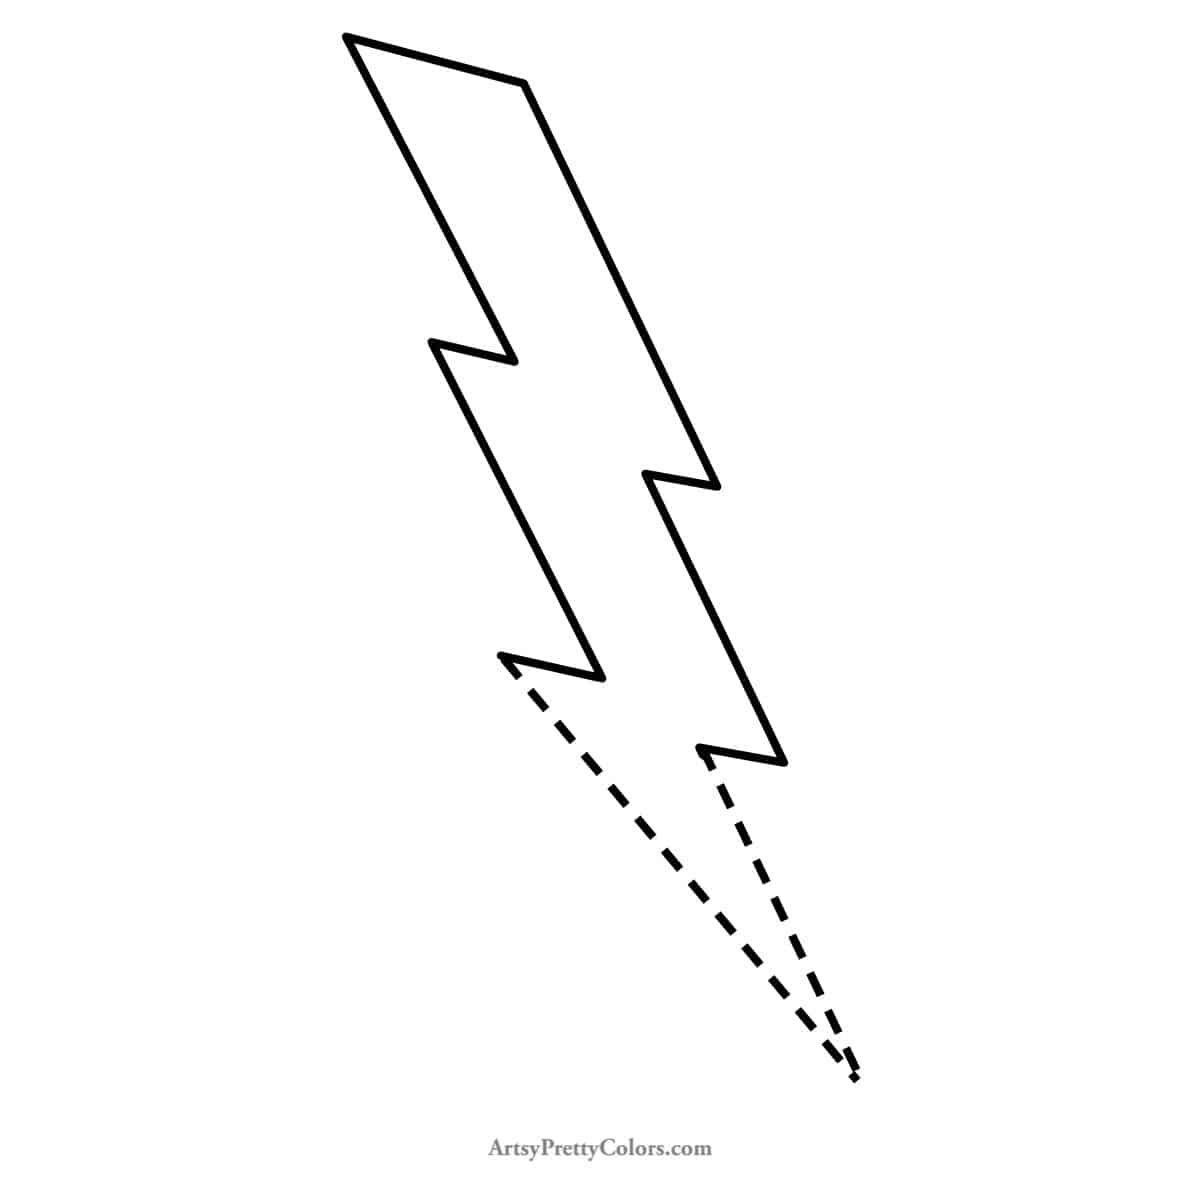 angled, pointed bottom of lightning bolt